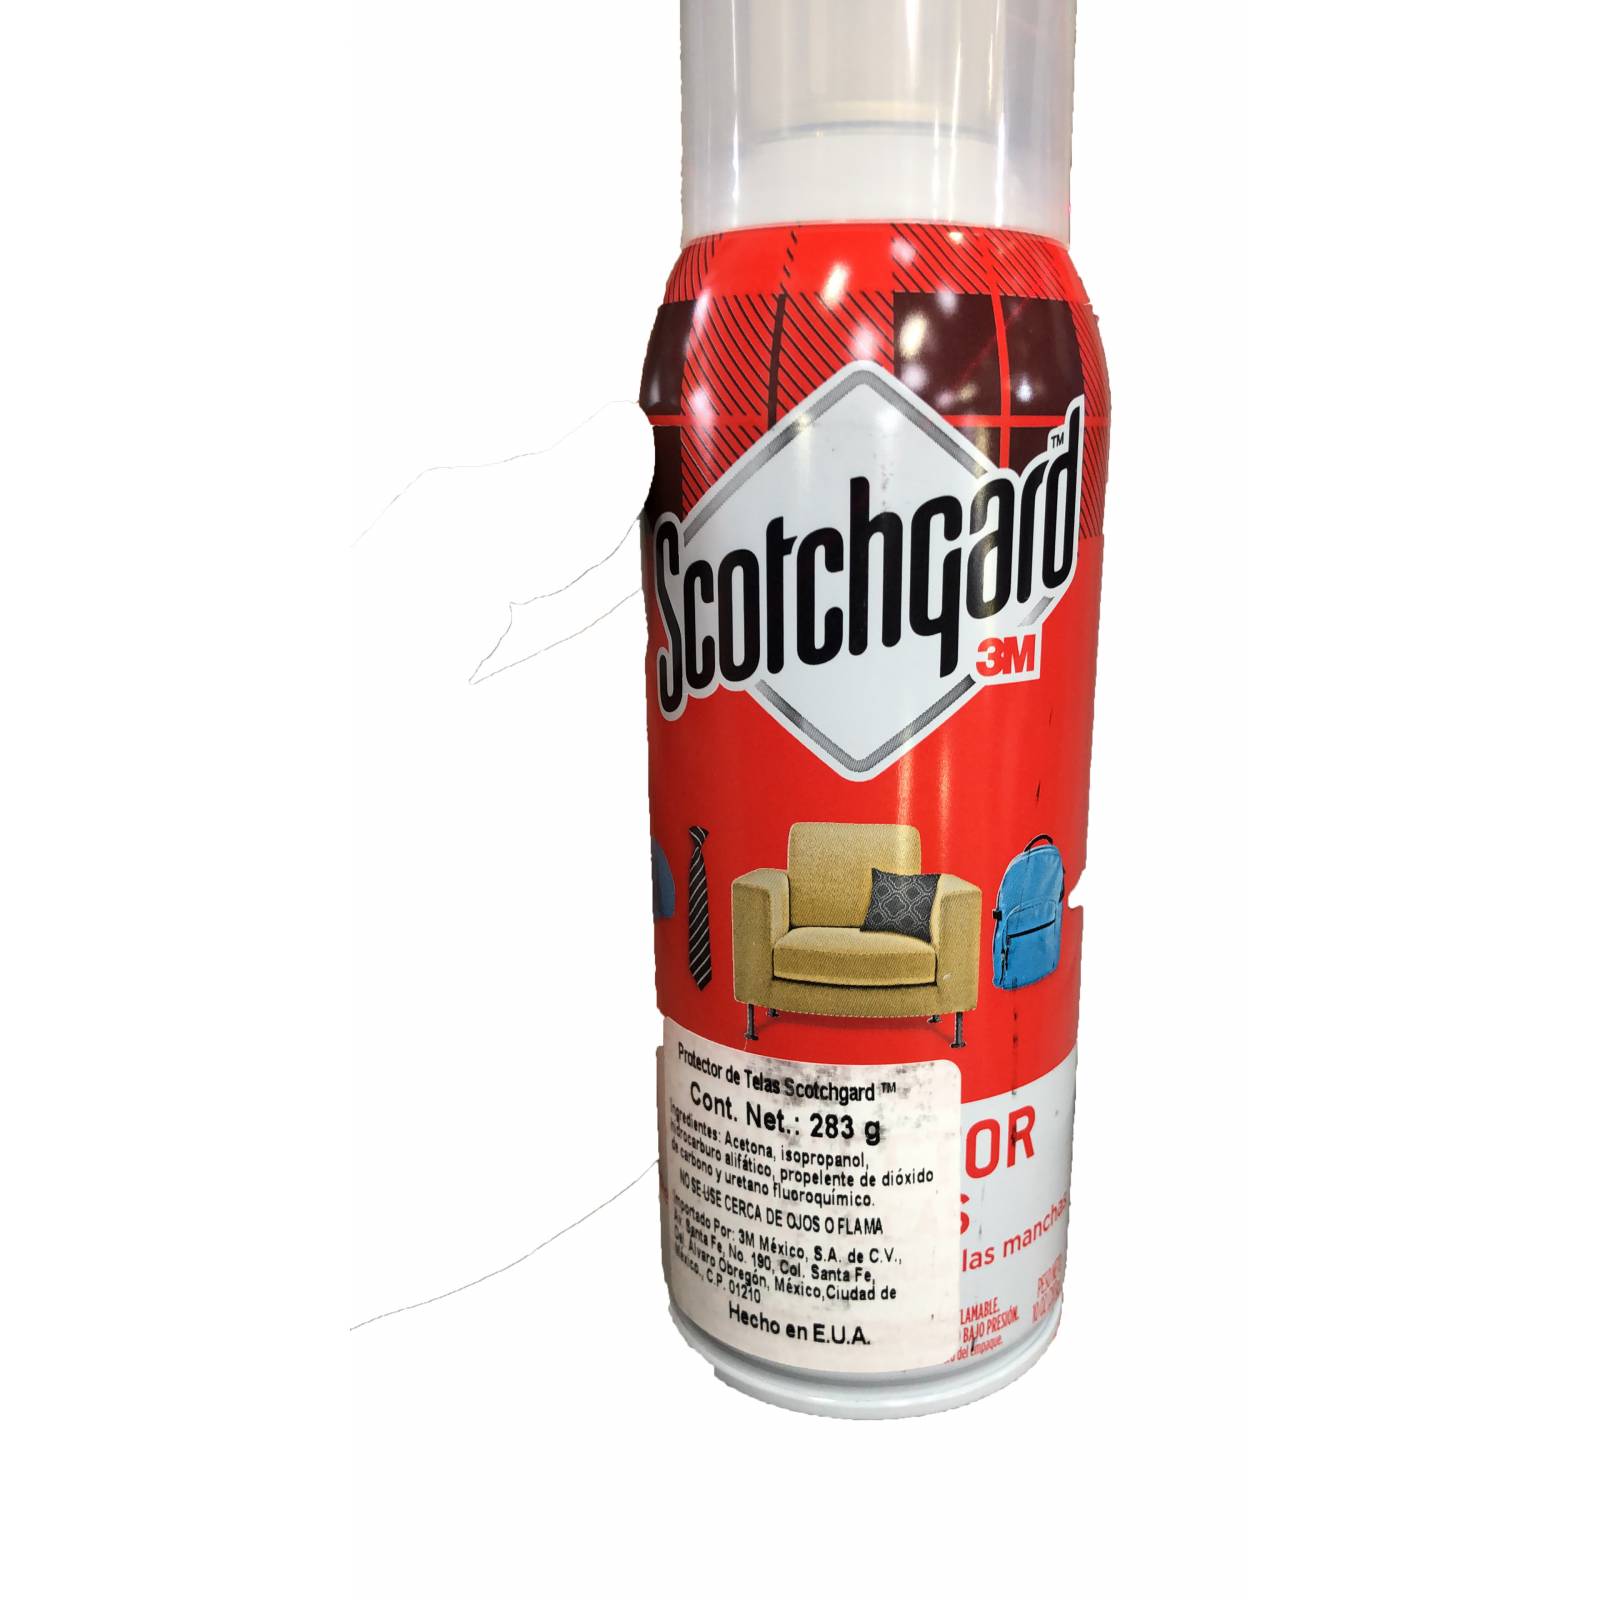 Scotchgard 3M, Protector de telas en aerosol, para todo tipo de telas, muebles, mochilas, automovil, 283 gr.